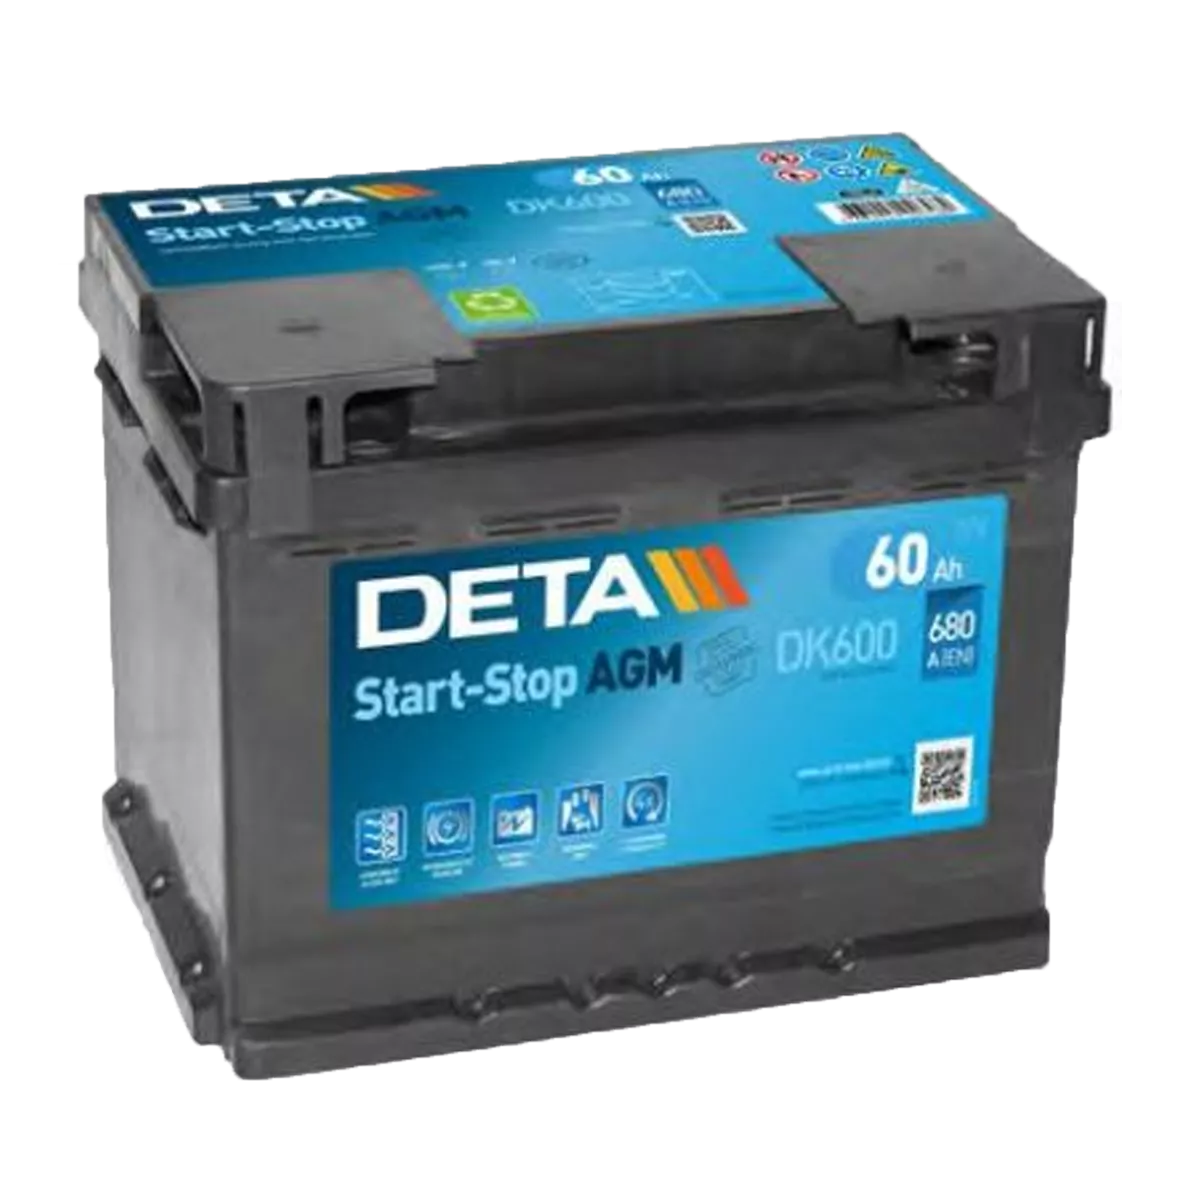 Автомобильный аккумулятор DETA 6CT-60Аh АзЕ AGM Start-Stop (DK600)